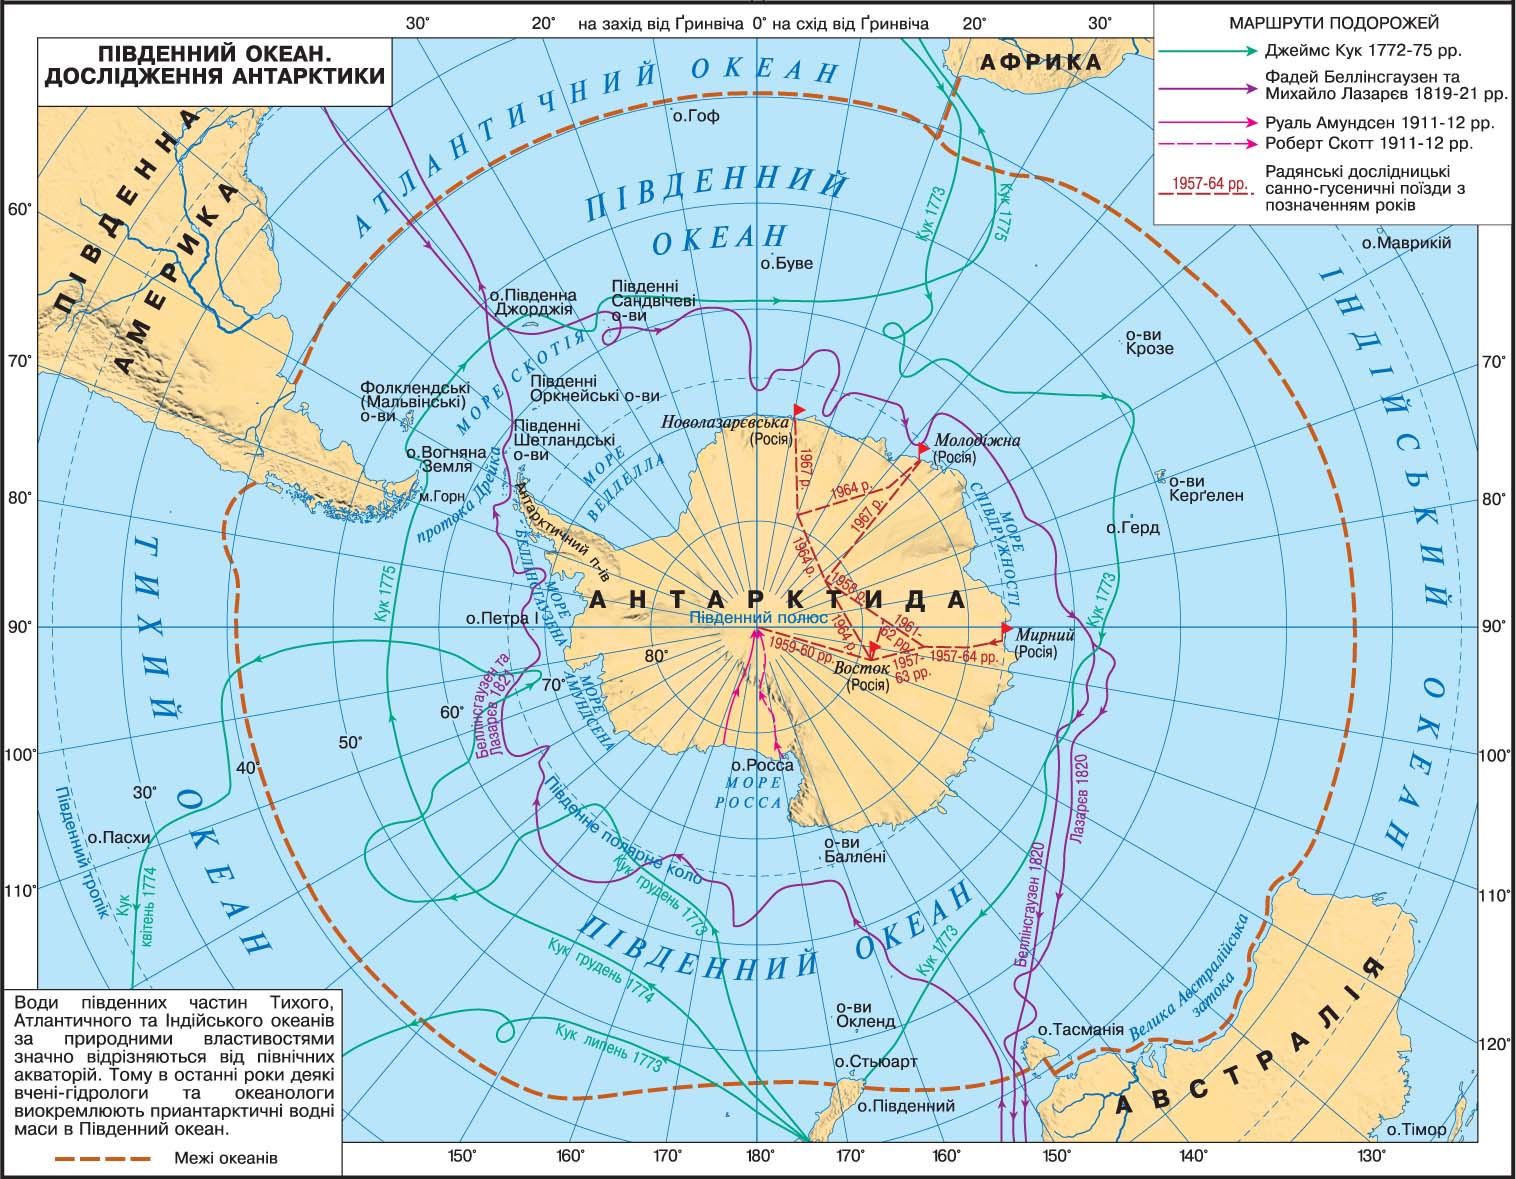 Материк расположенный в южном океане. Показать на карте Северный Ледовитый океан и Антарктиду. Границы Южного океана на карте. Физическая карта Антарктиды.